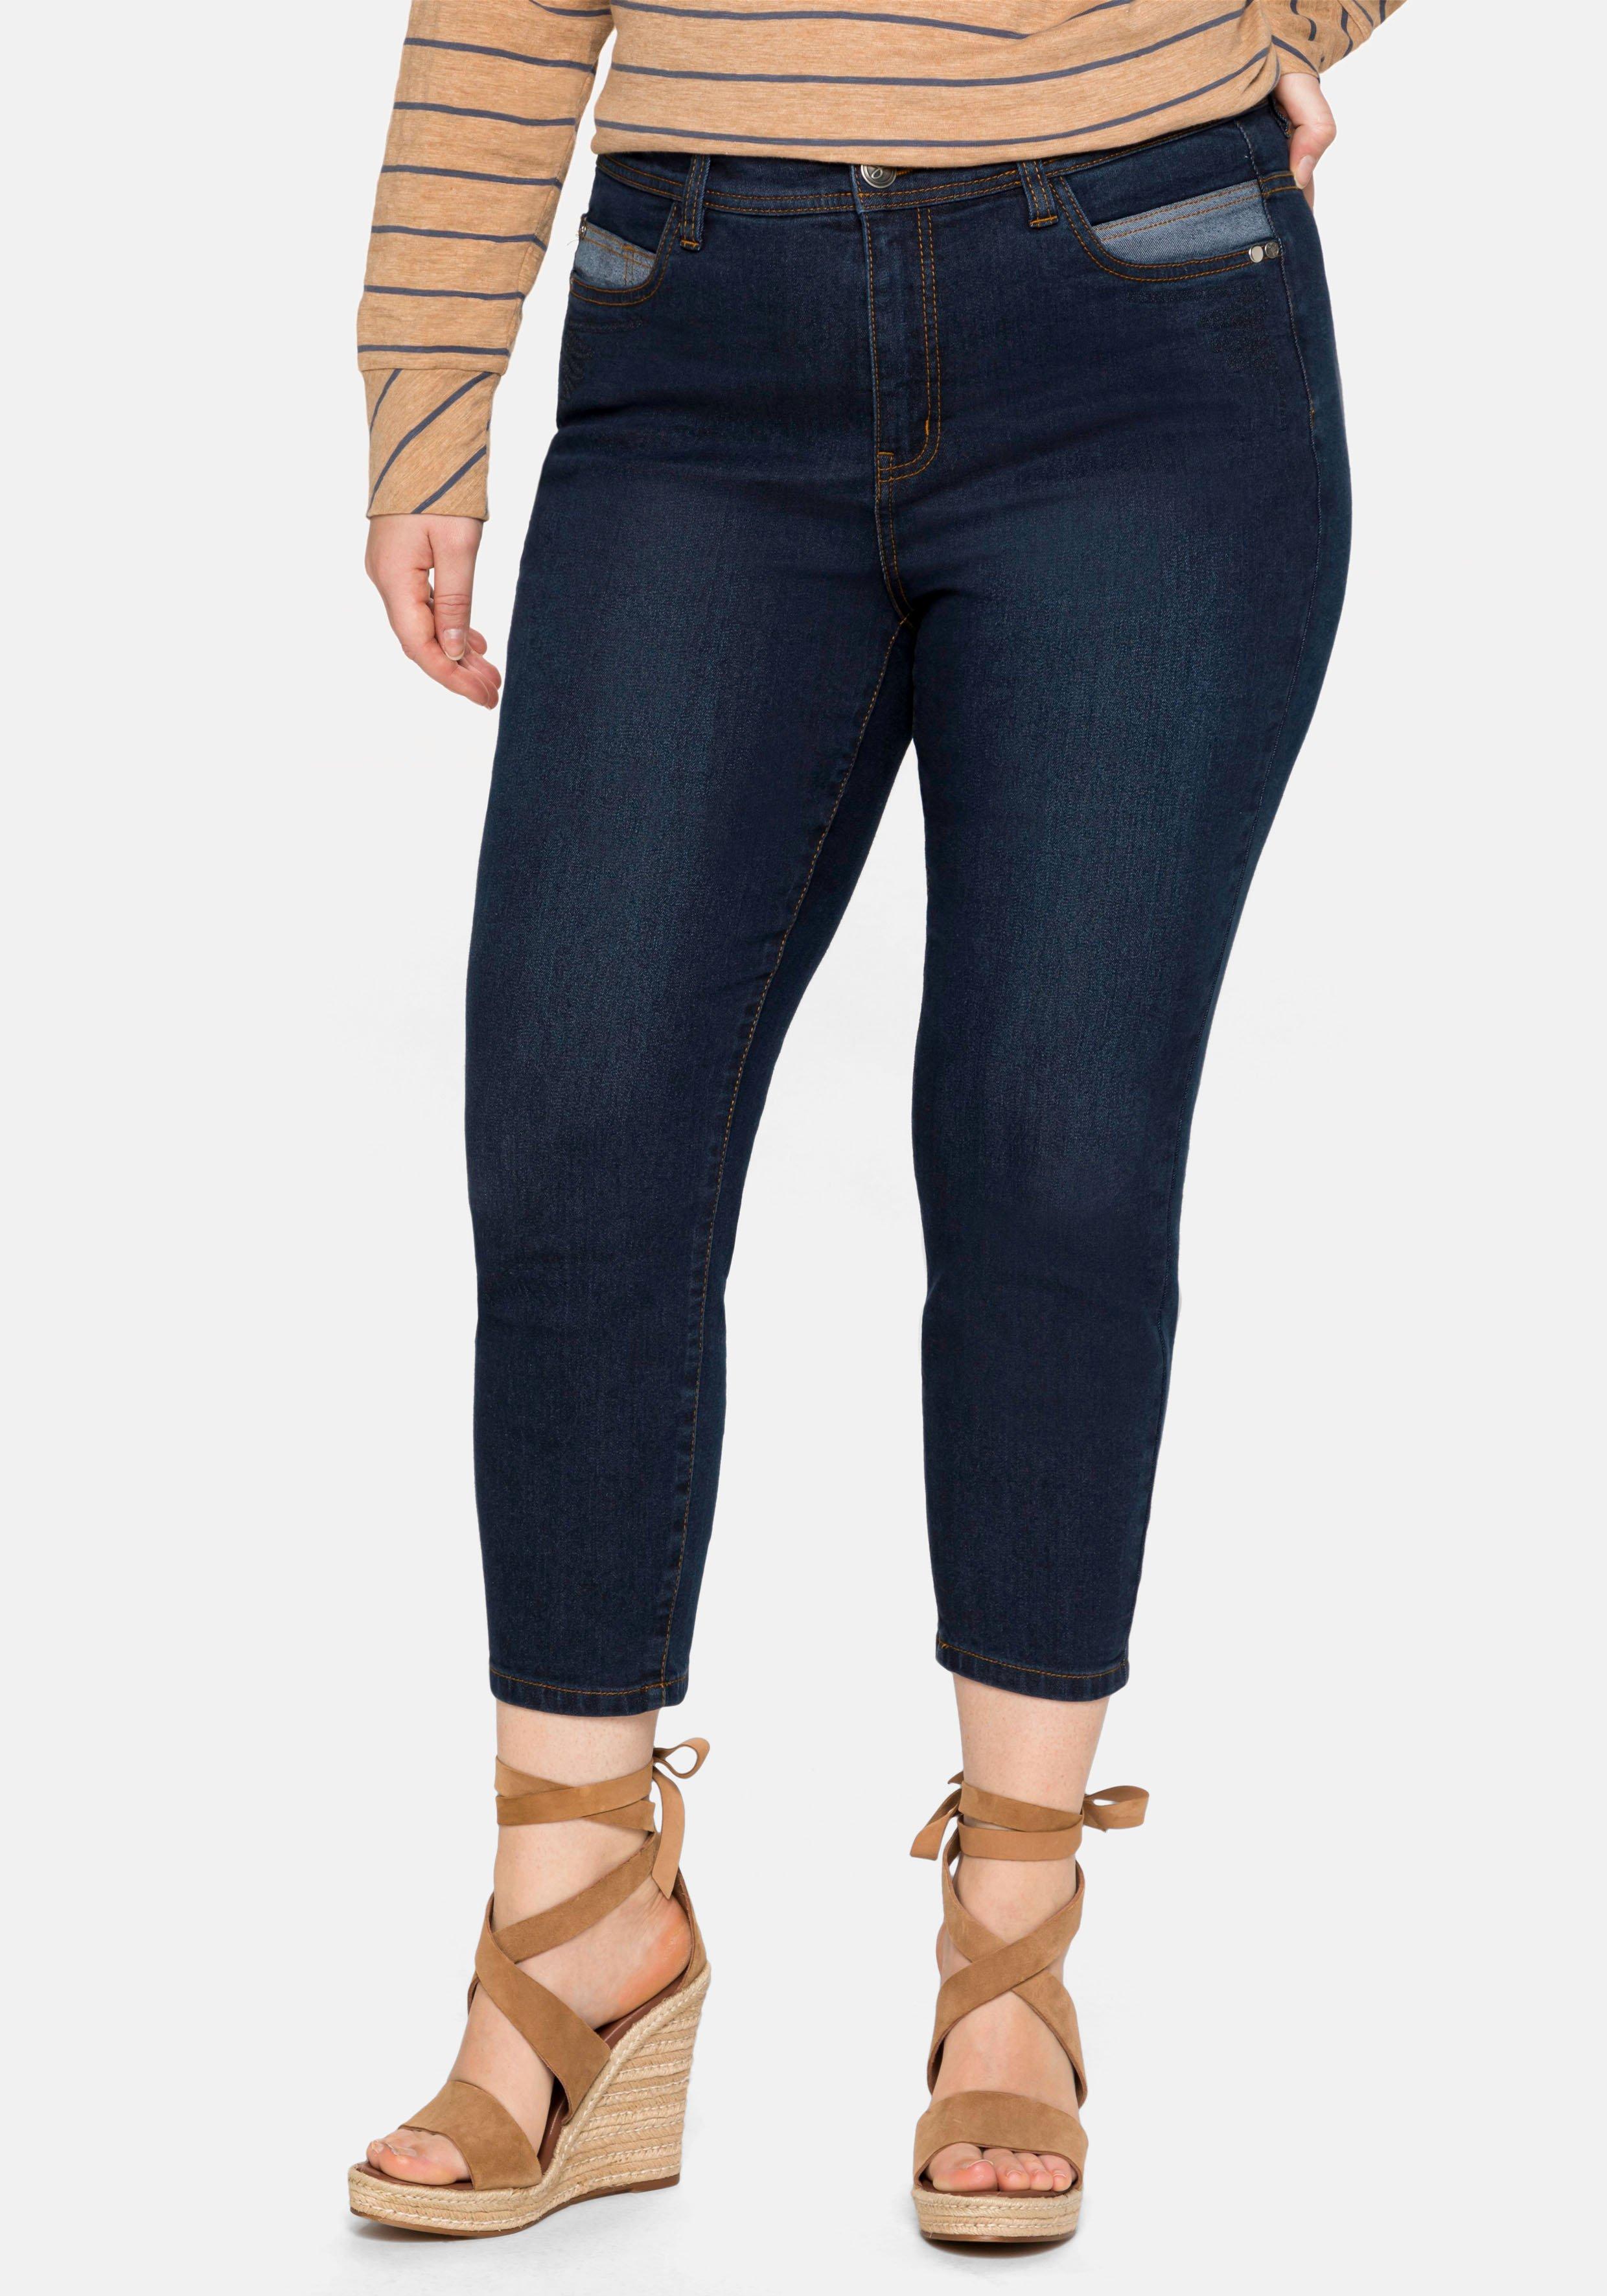 Damen Jeans ♥ | Größen Size 7/8 Plus große Mode sheego